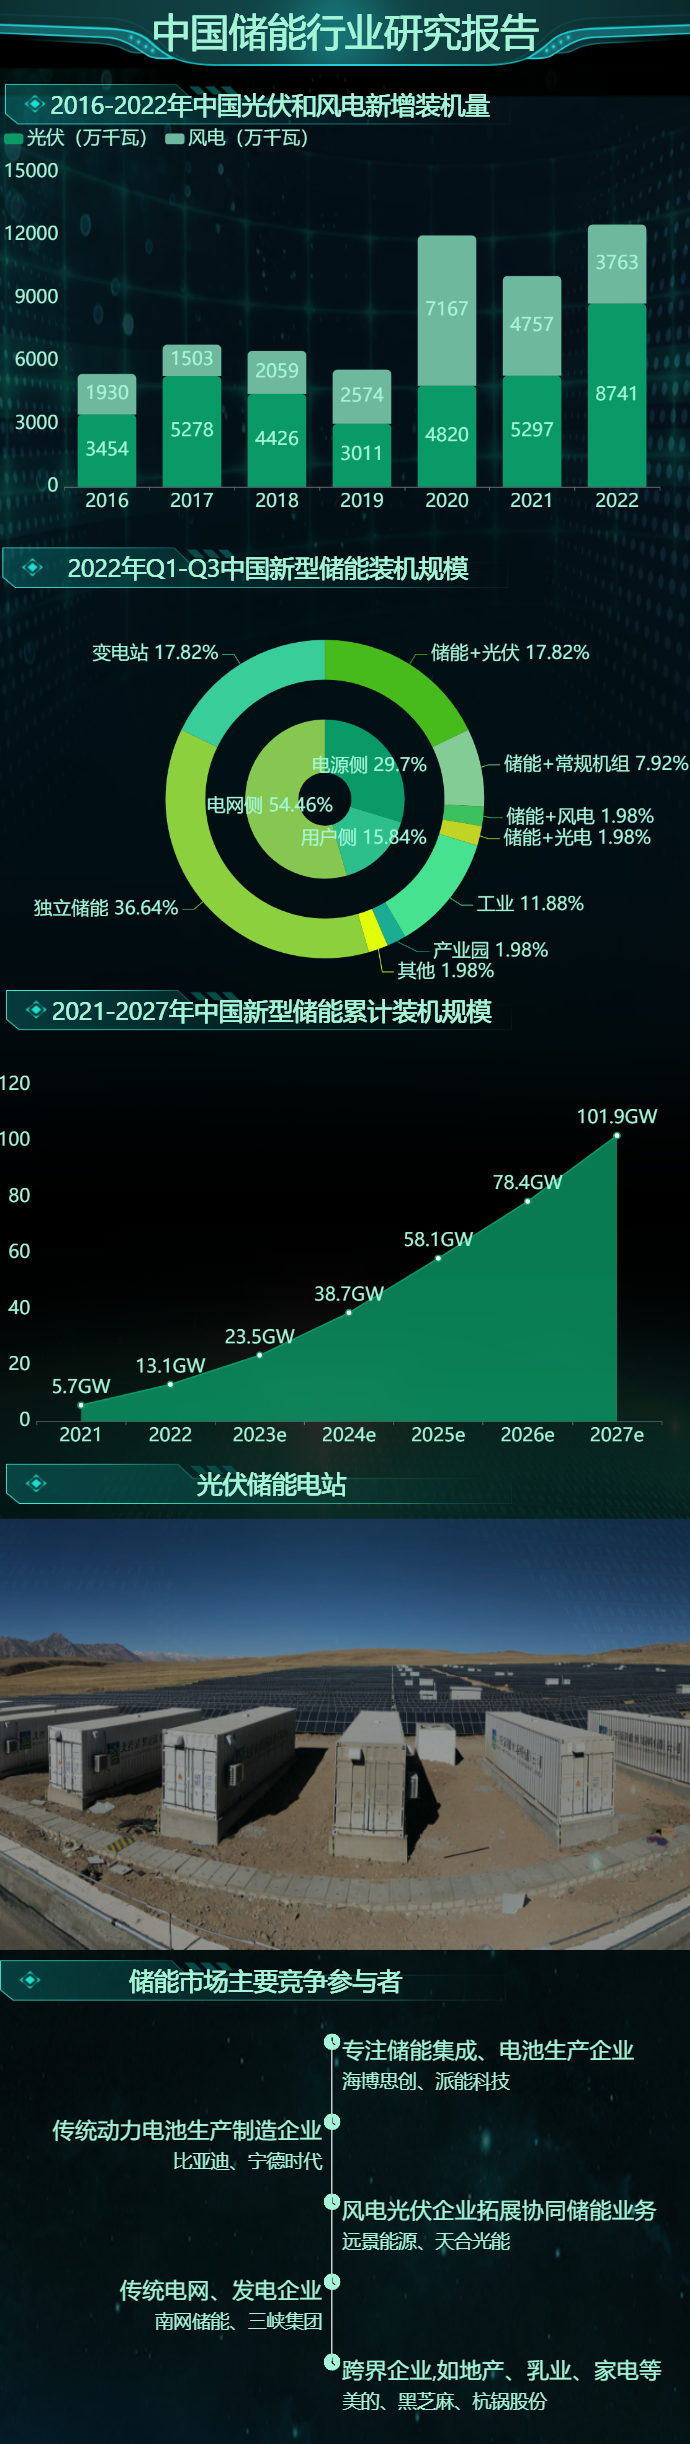 中国储能行业数据可视化报告-迪赛智慧数